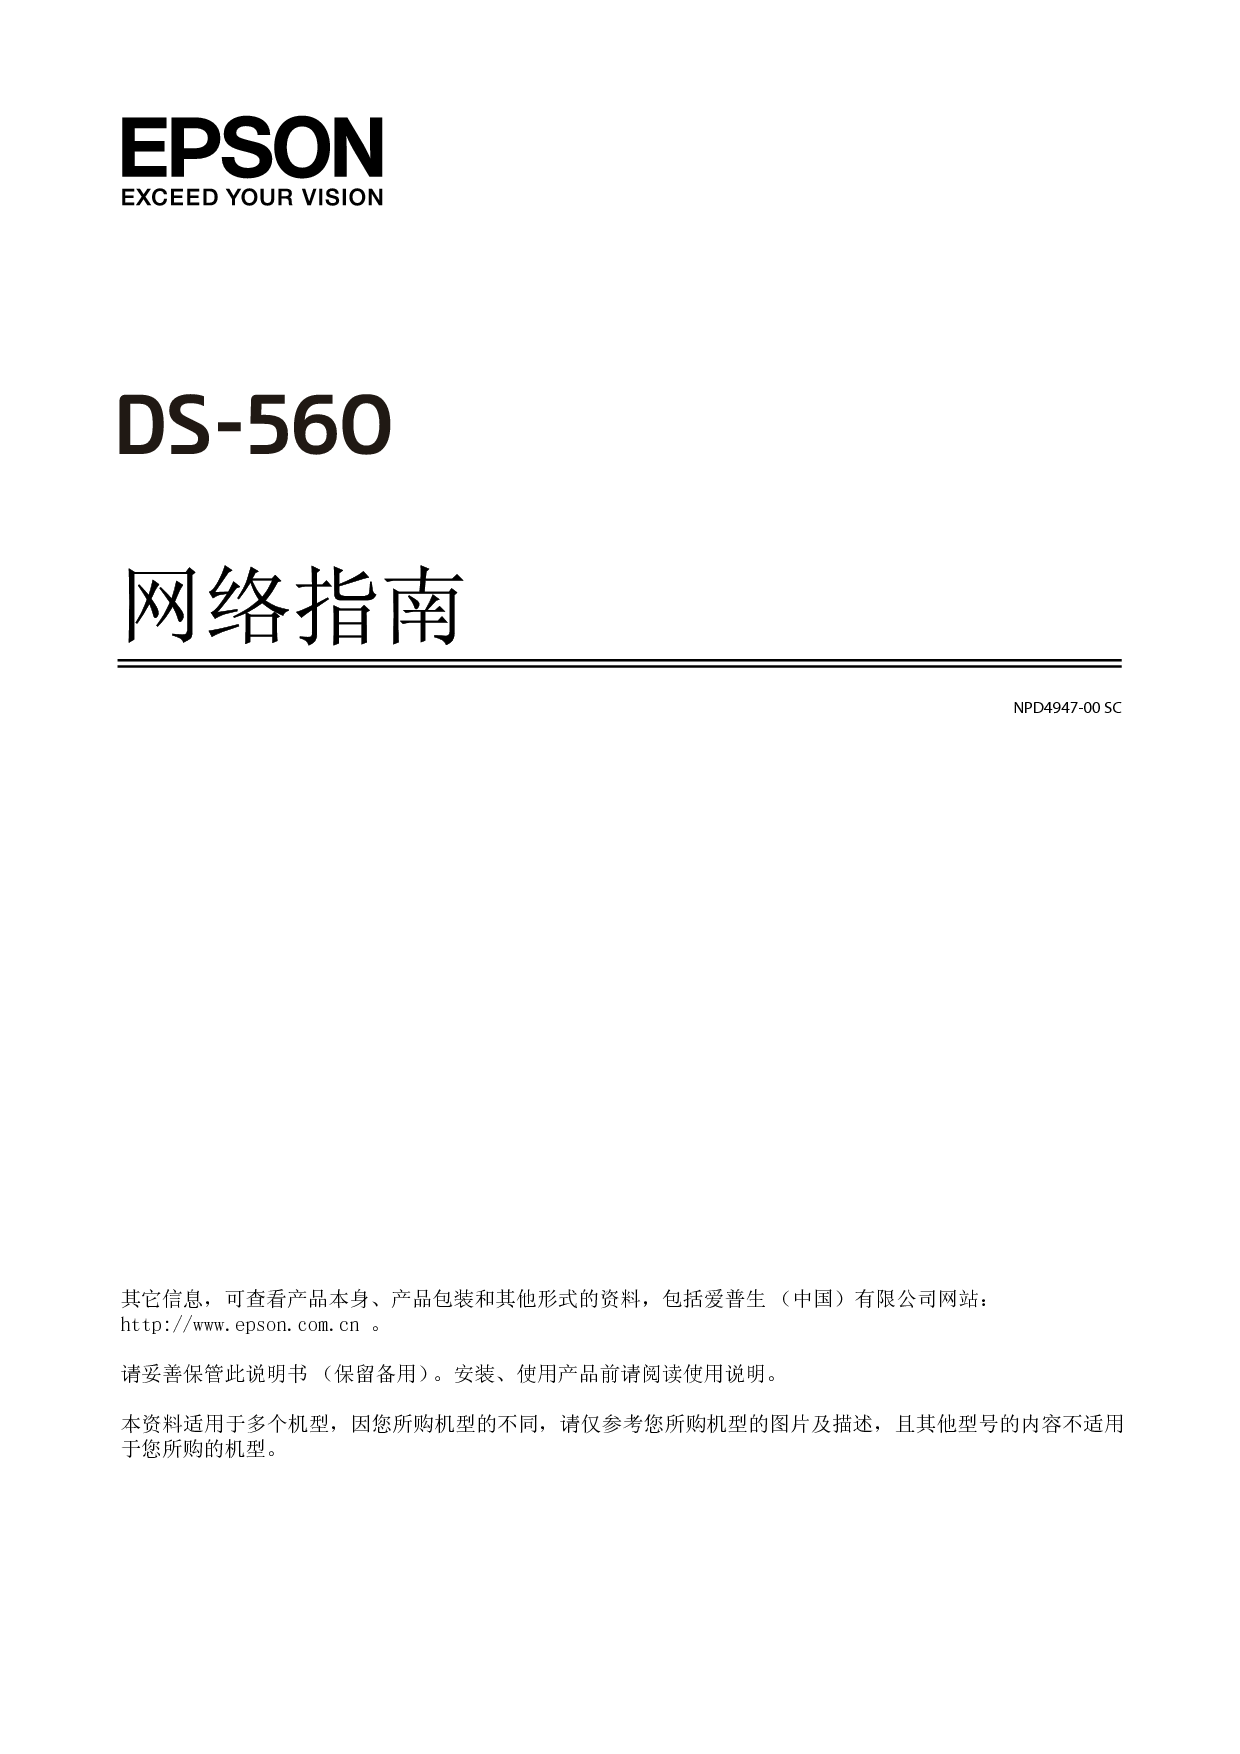 爱普生 Epson DS-560 网络 用户指南 封面